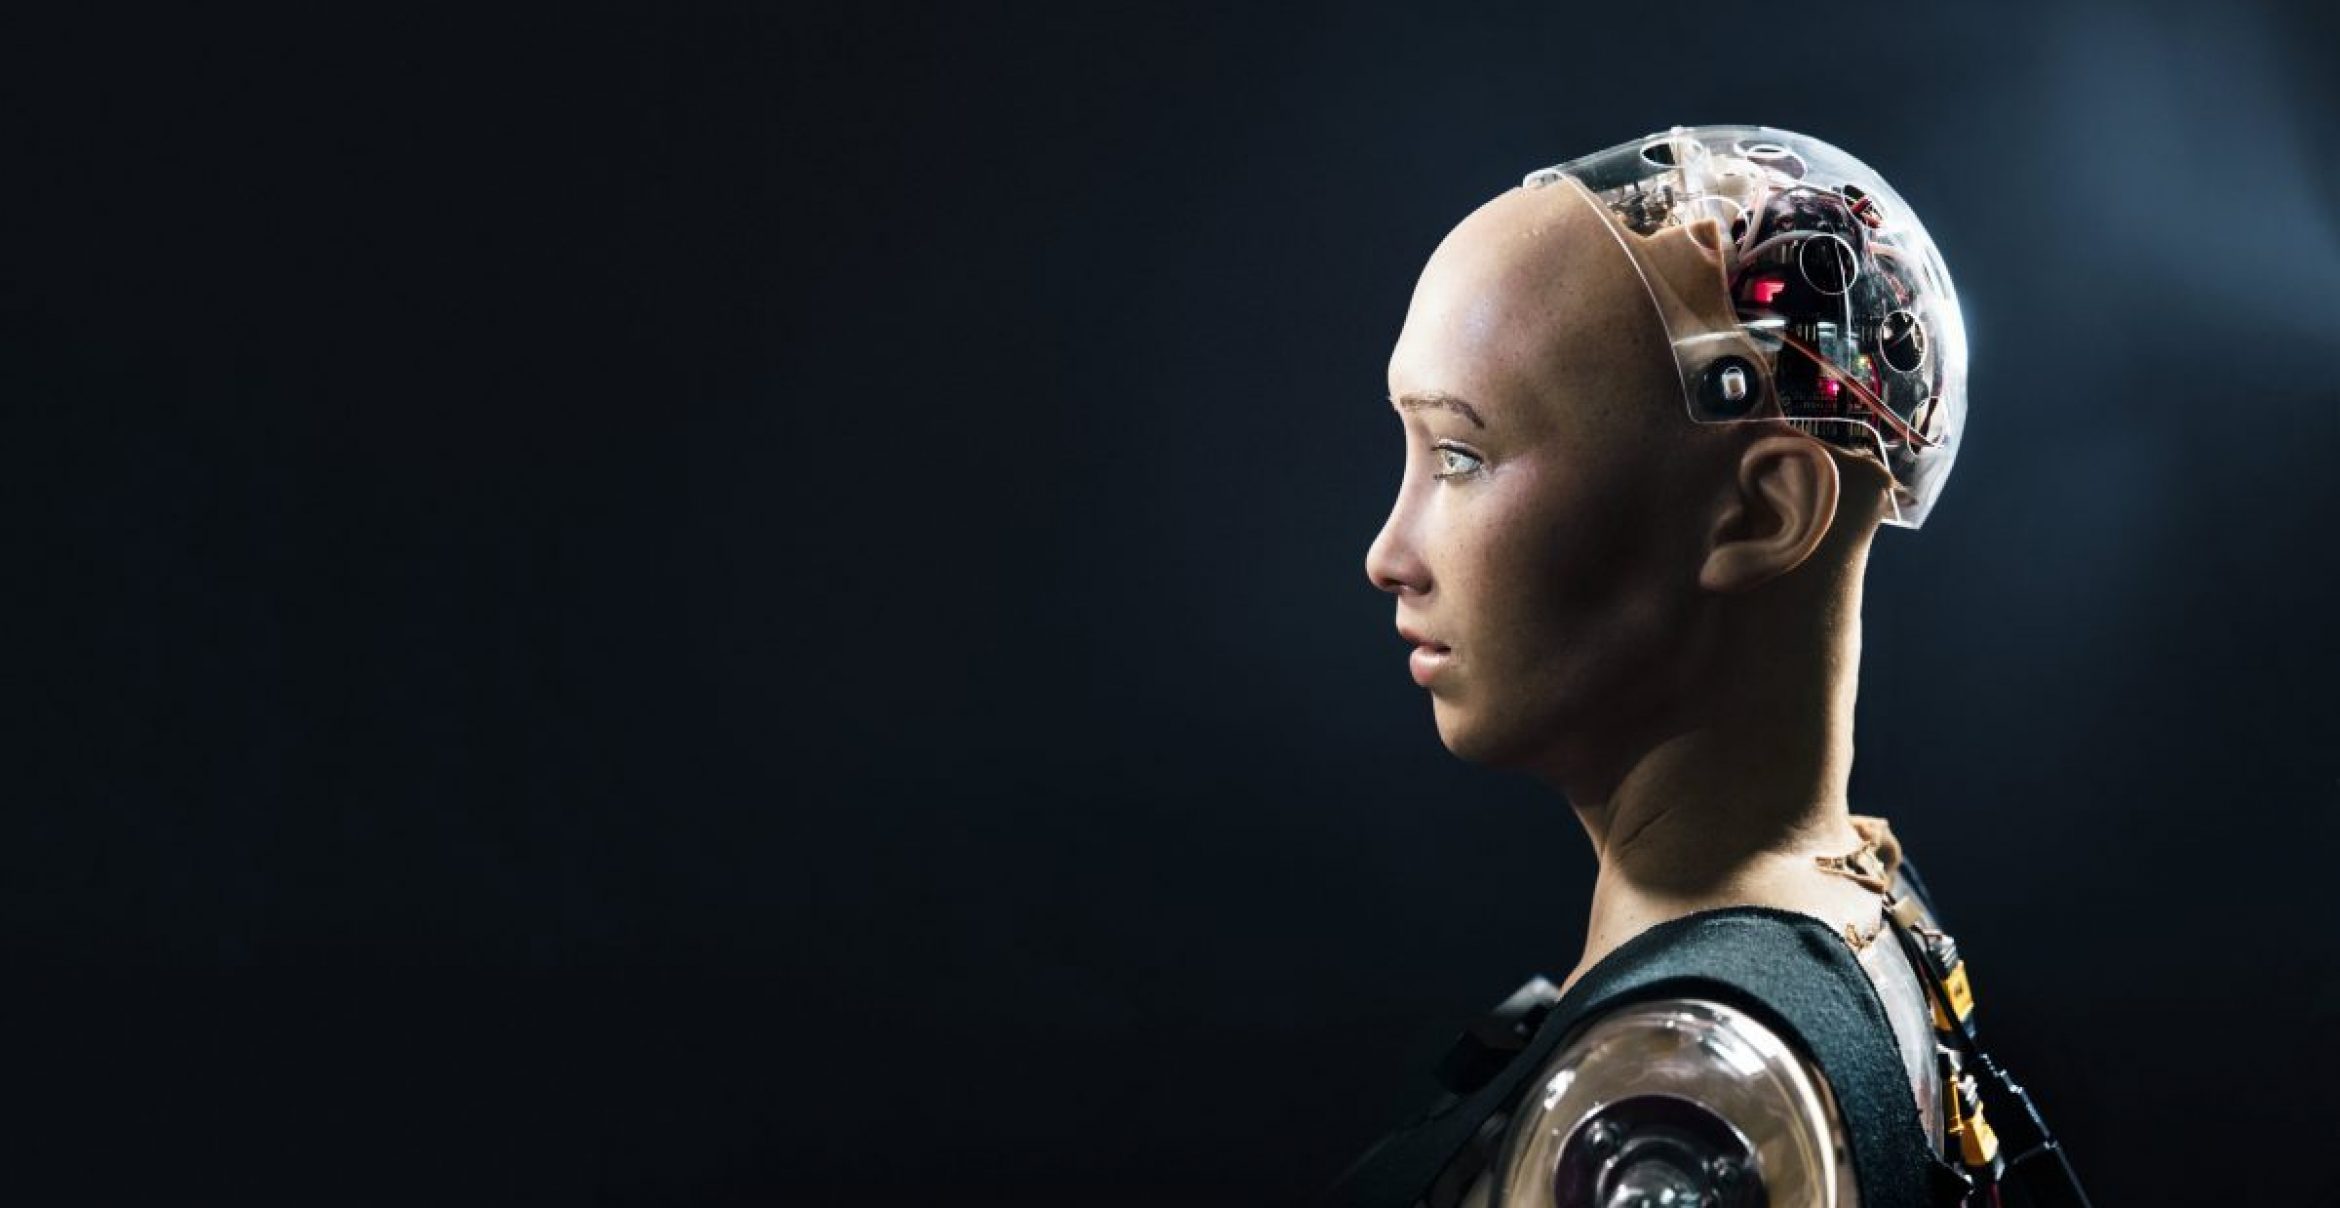 Liebevolle künstliche Intelligenz: Dieser Roboter wurde programmiert um Liebe zu lehren